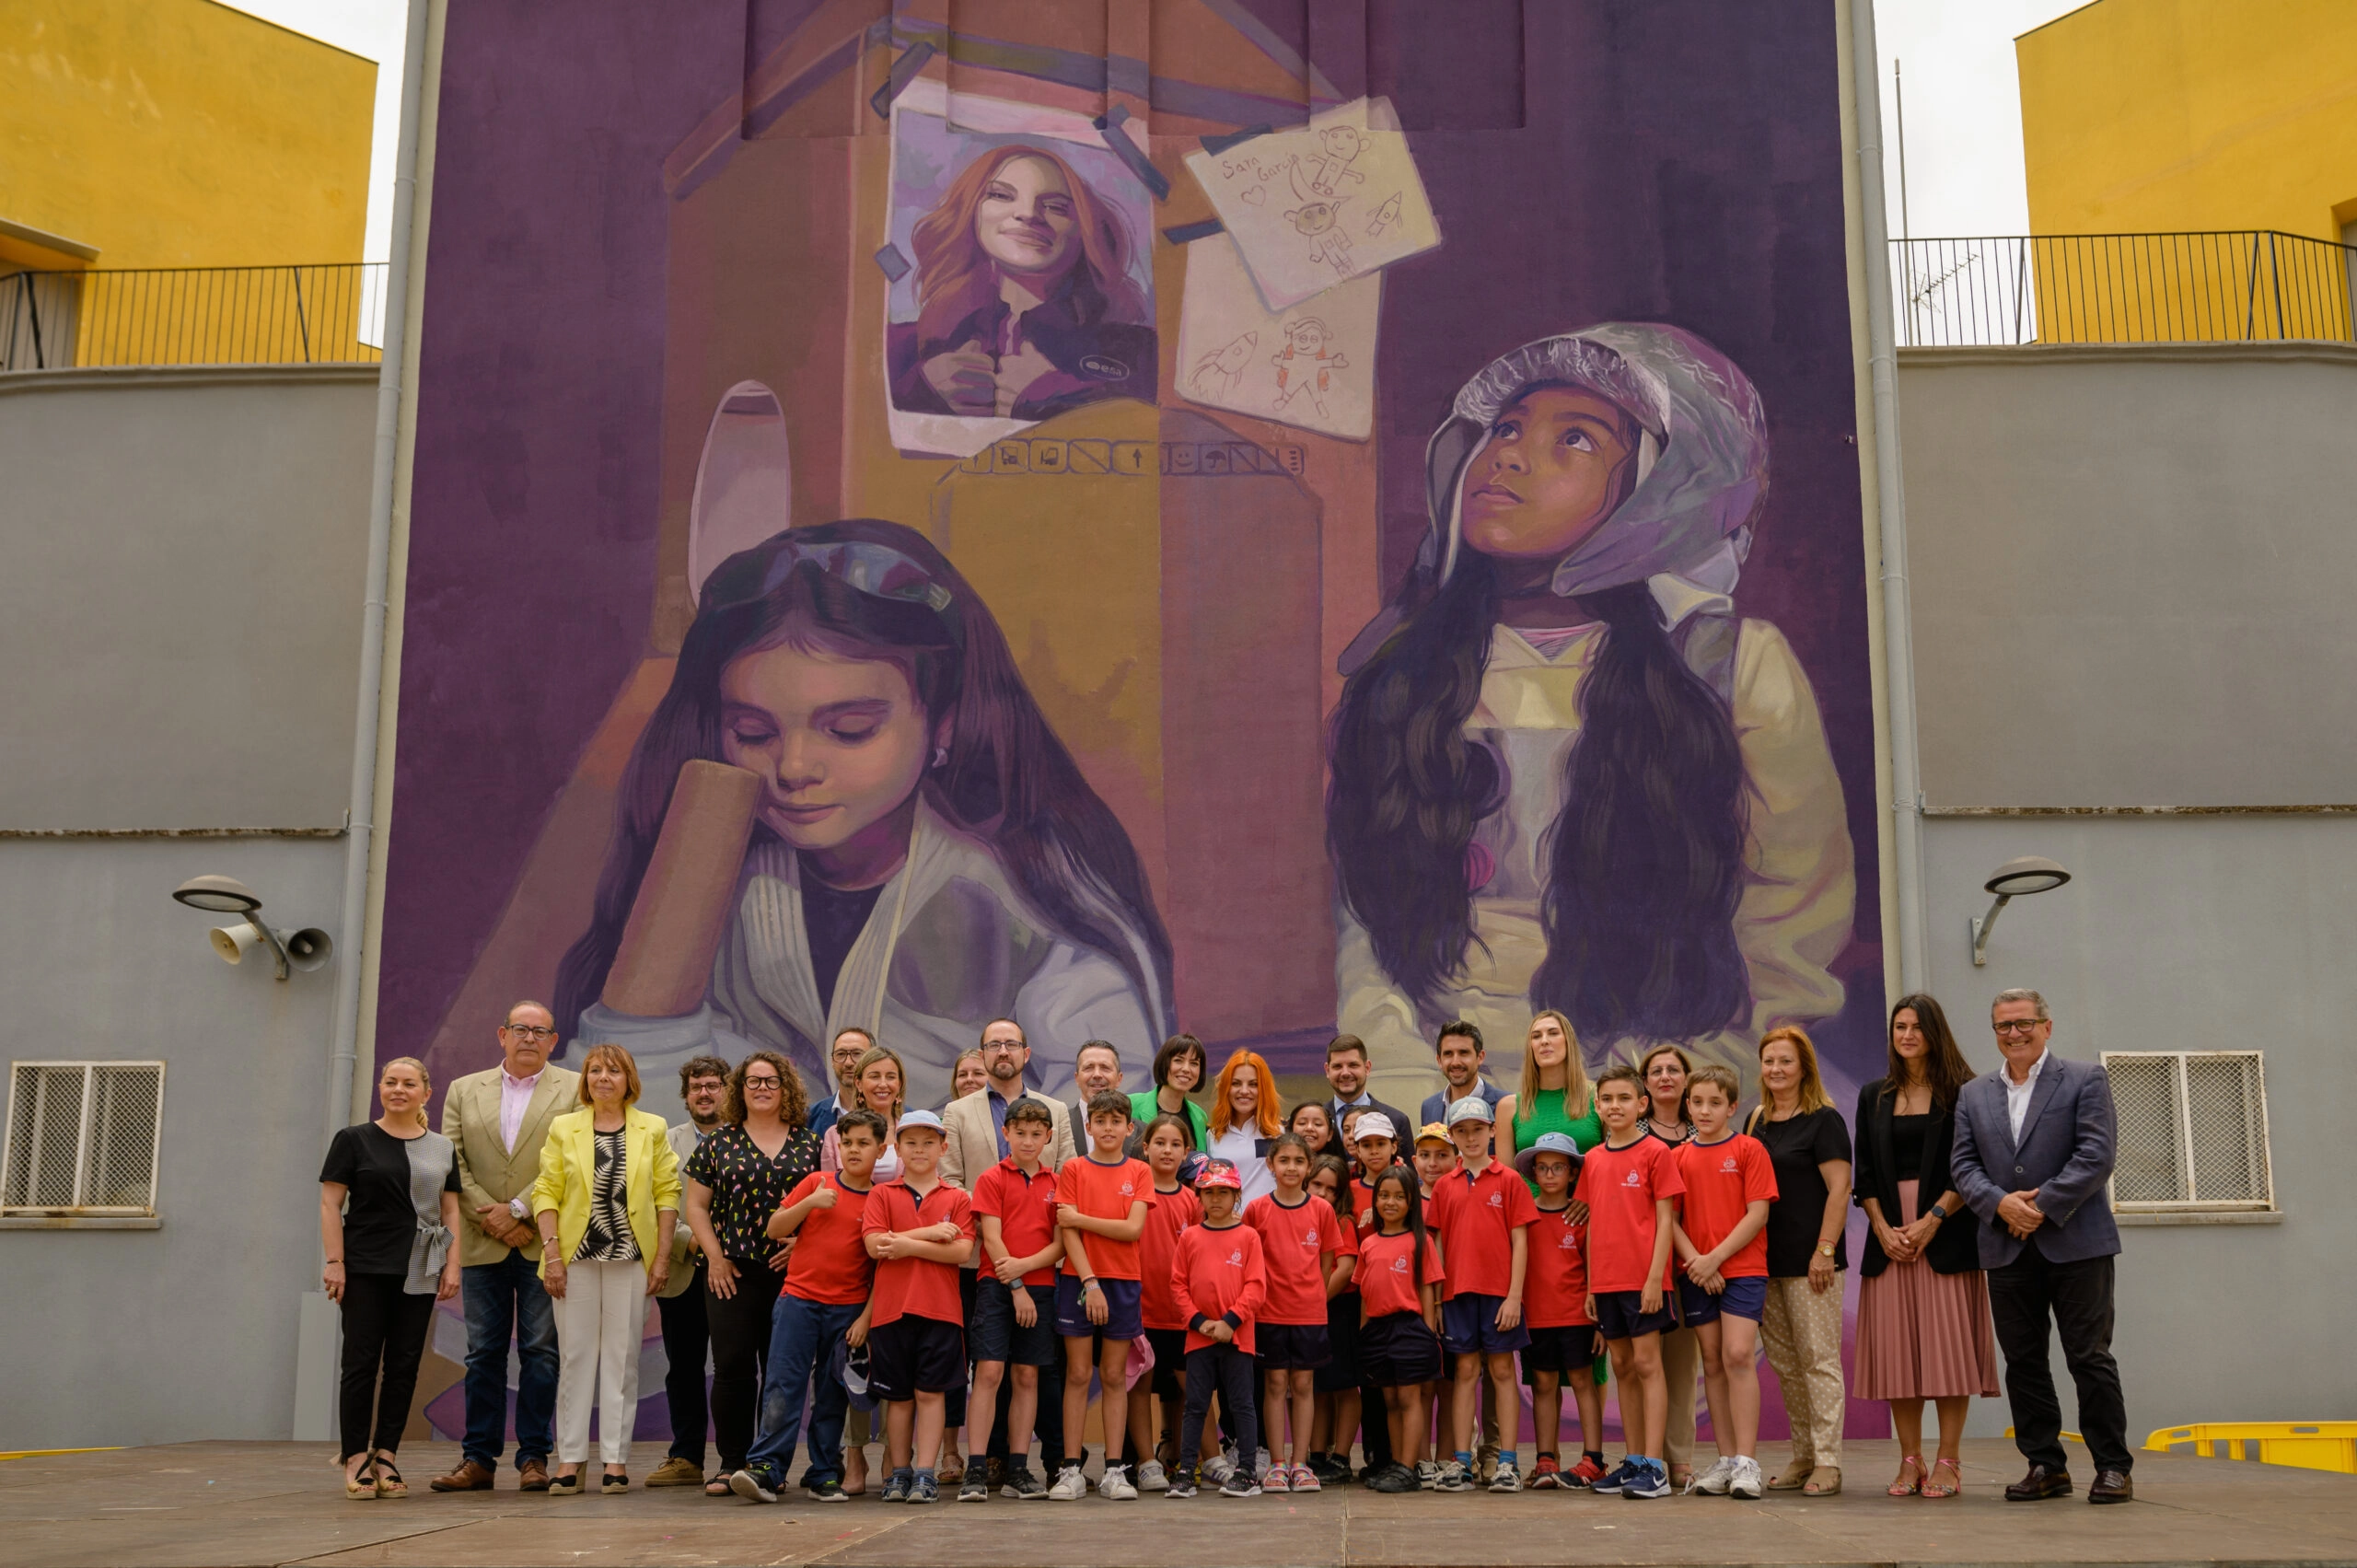 Fotografía de familia de la inauguración del mural dedicado a SaraGarcía-Alonso dentro de Dones de Ciència